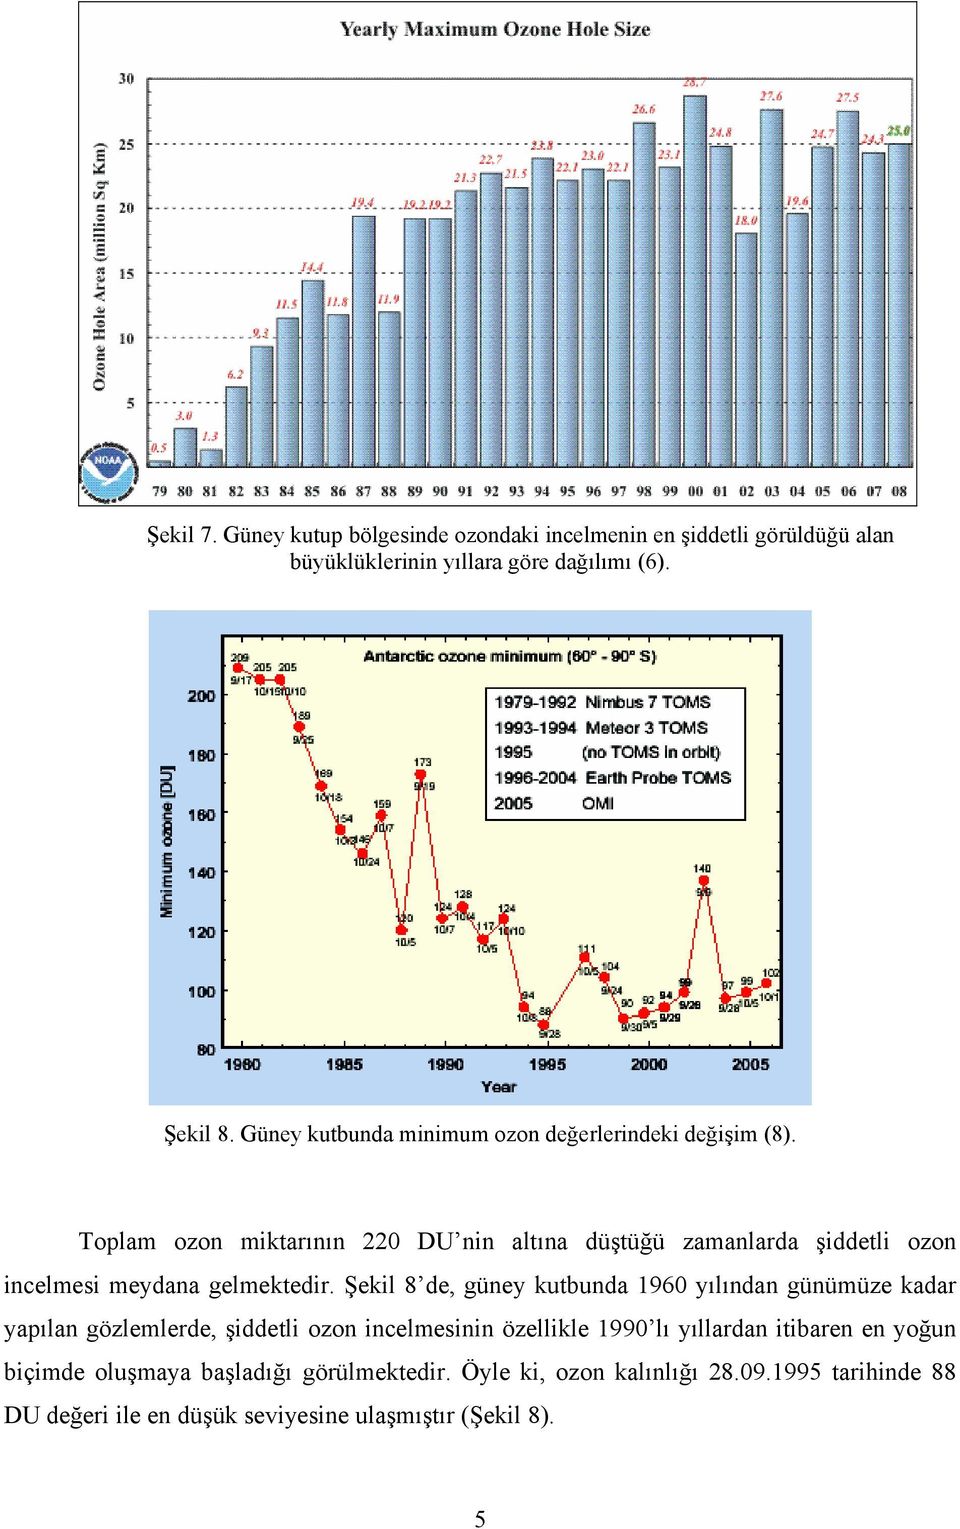 Toplam ozon miktarının 220 DU nin altına düştüğü zamanlarda şiddetli ozon incelmesi meydana gelmektedir.